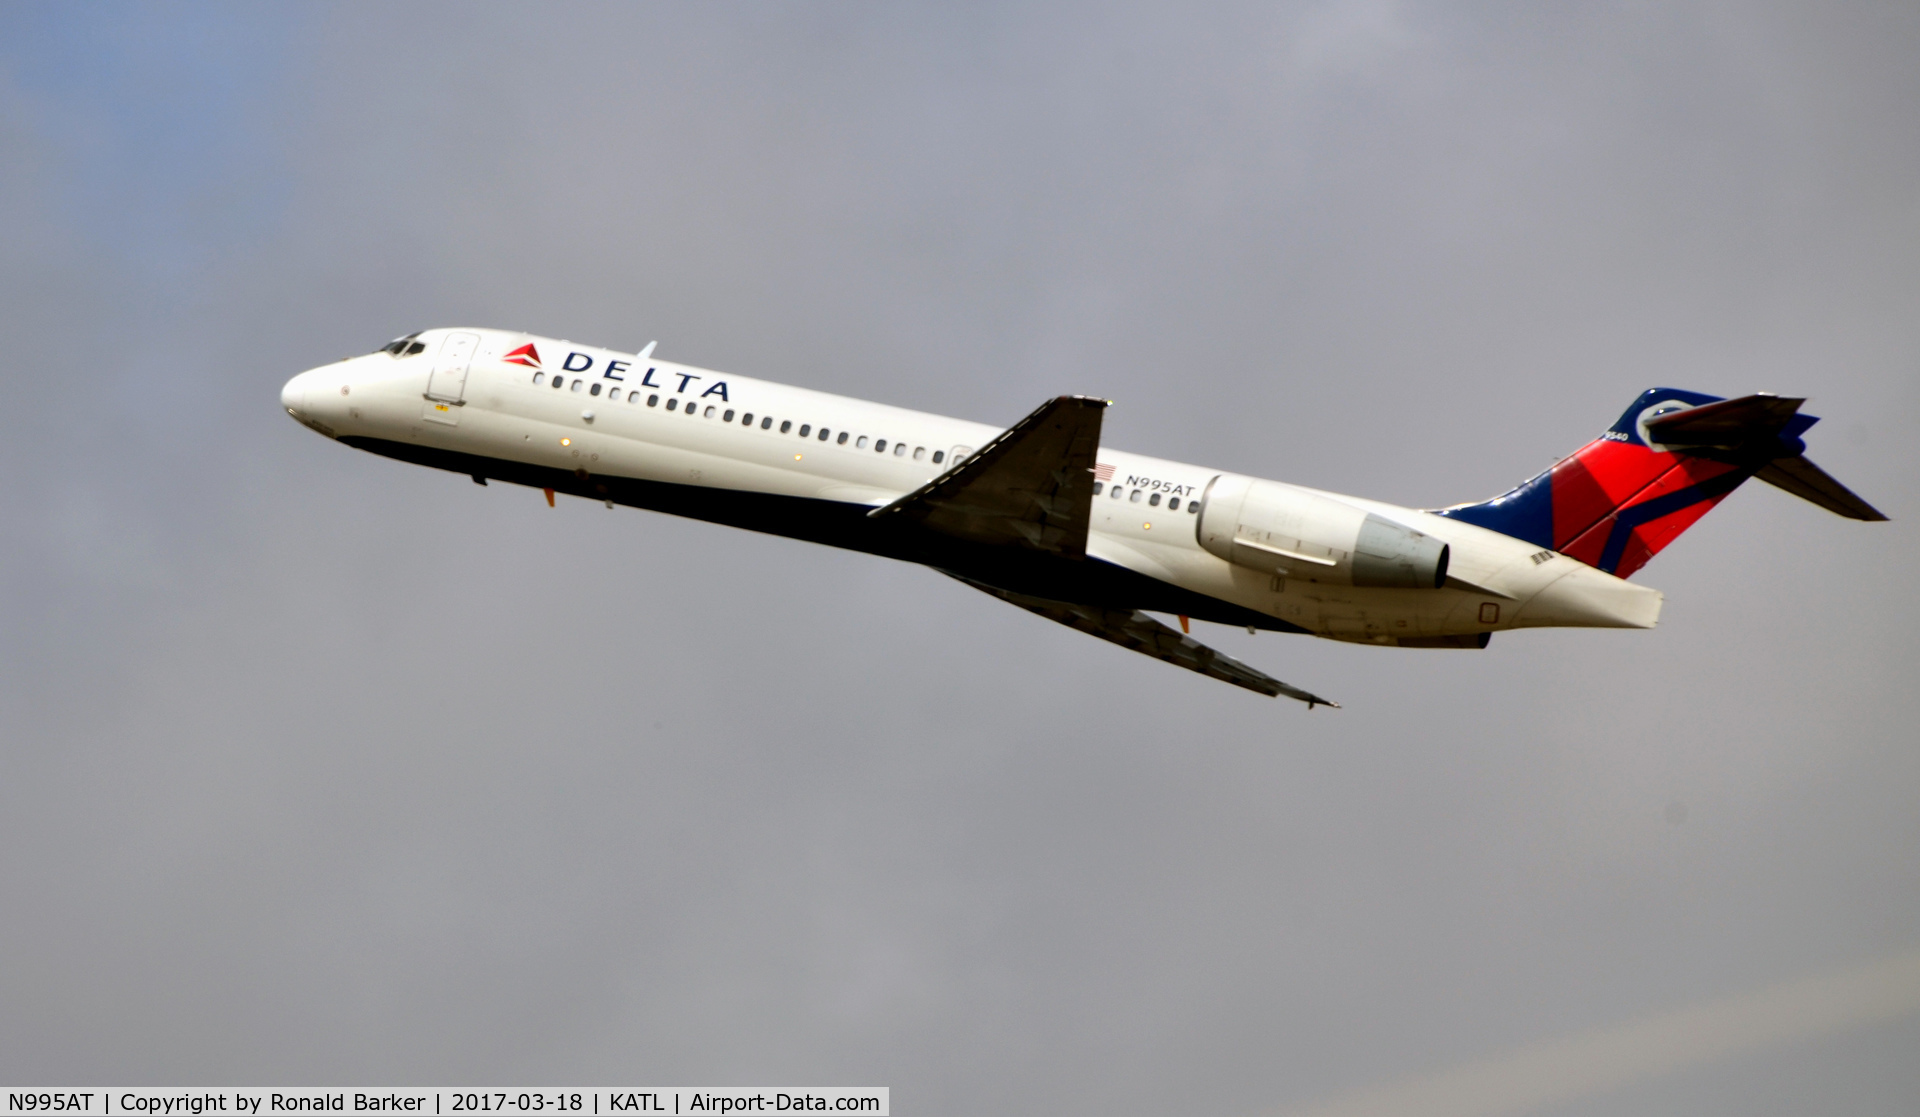 N995AT, 2002 Boeing 717-200 C/N 55139, Takeoff Atlanta